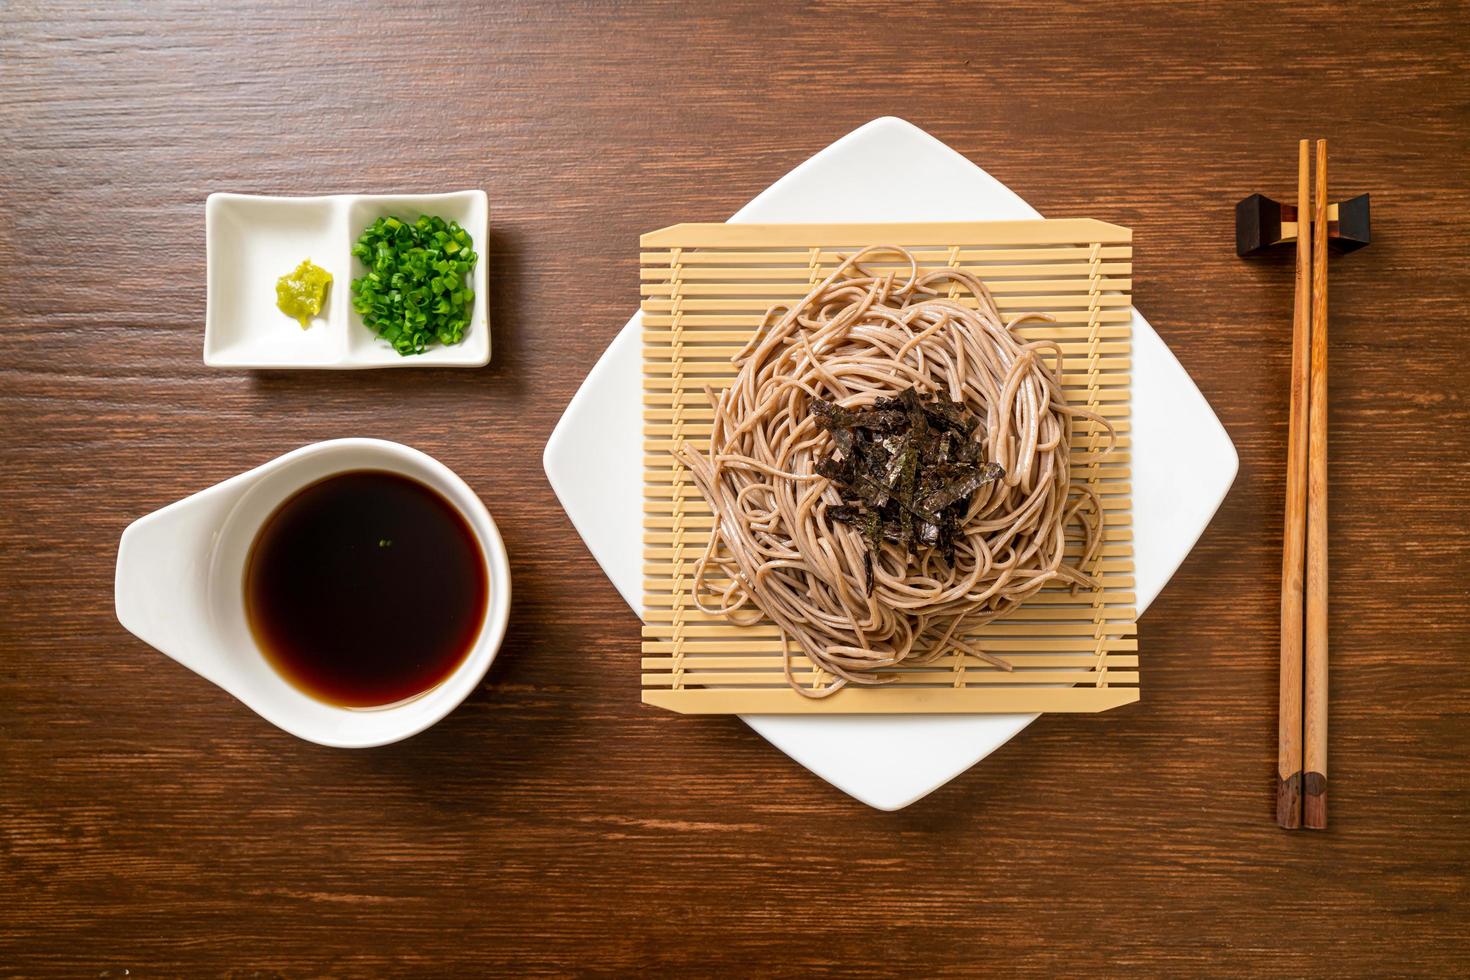 kalte Buchweizen-Soba-Nudeln oder Zaru-Ramen - japanische Küche foto